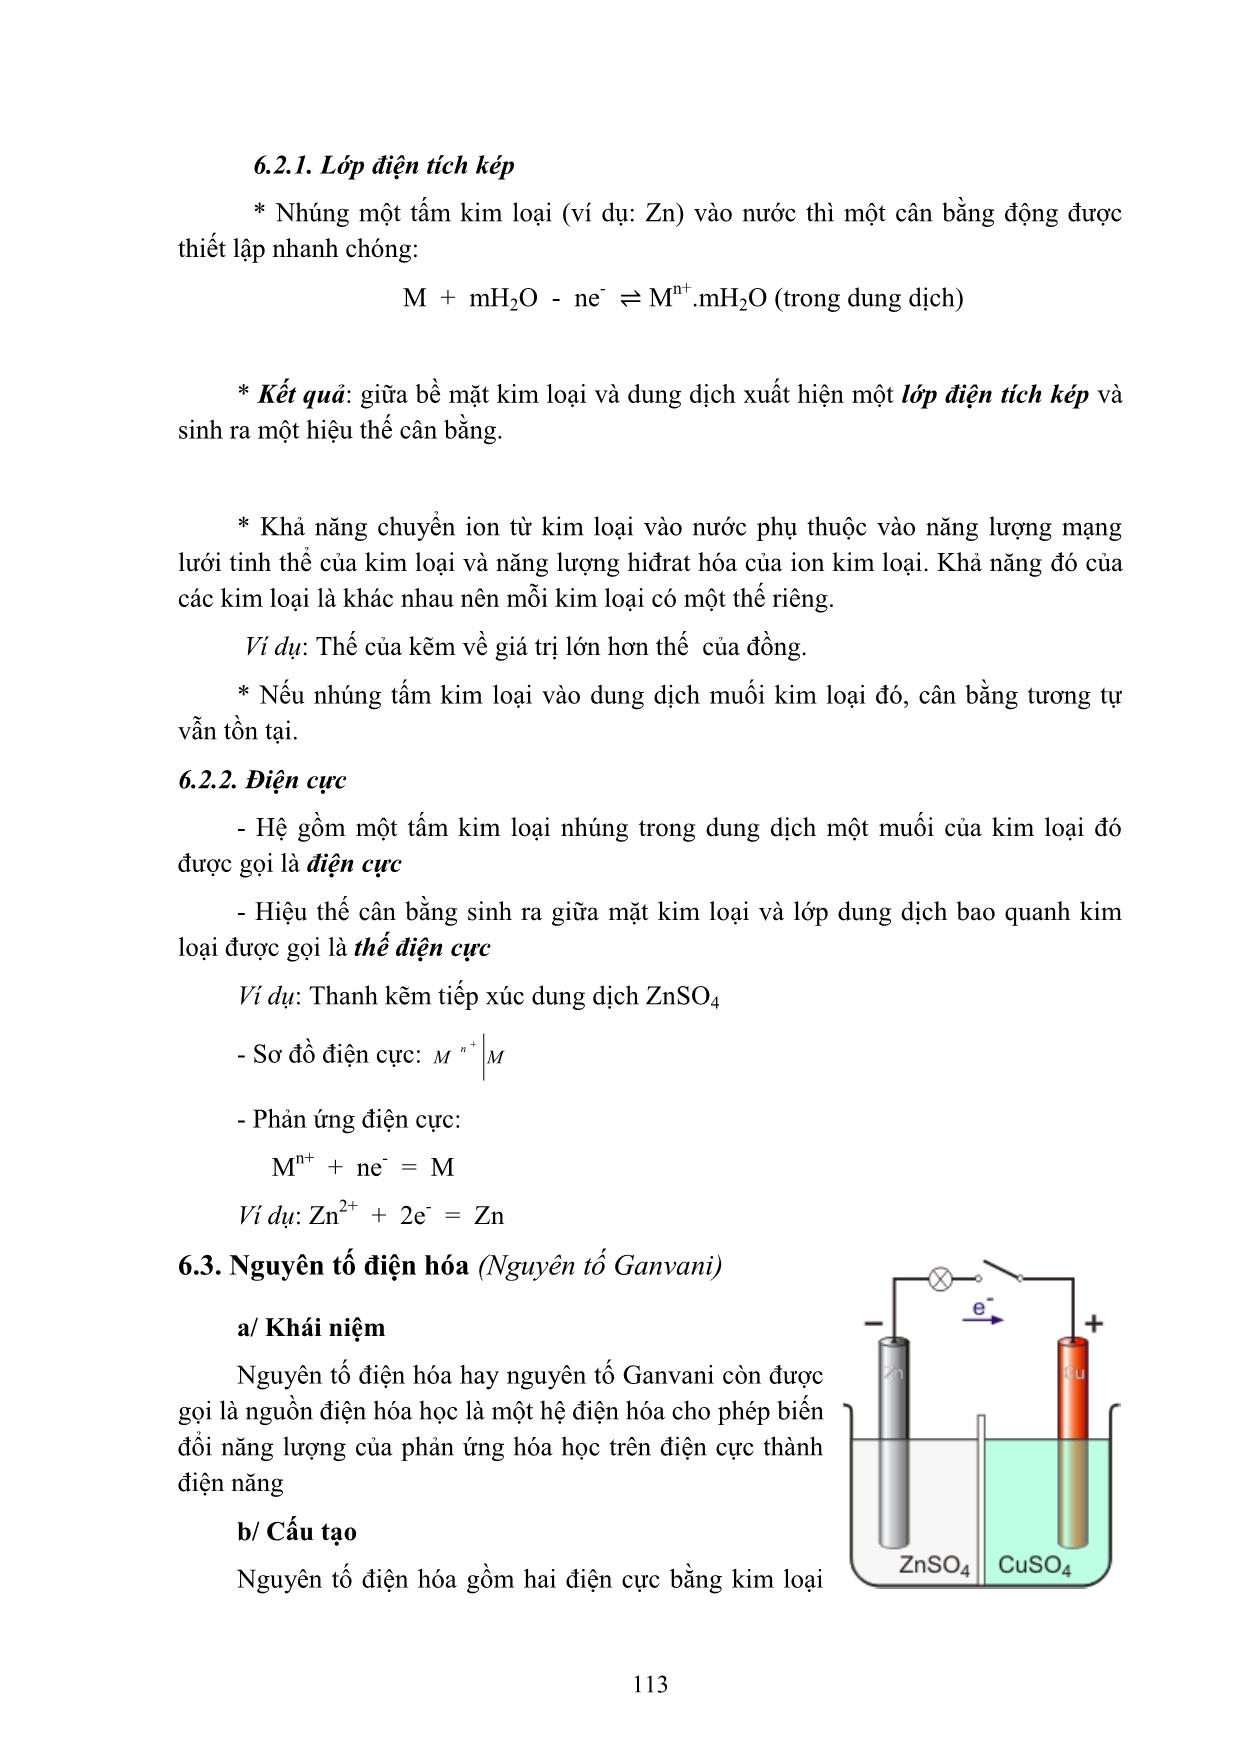 Bài giảng Hóa học đại cương A - Hoàng Hải Hậu (Phần 2) trang 6